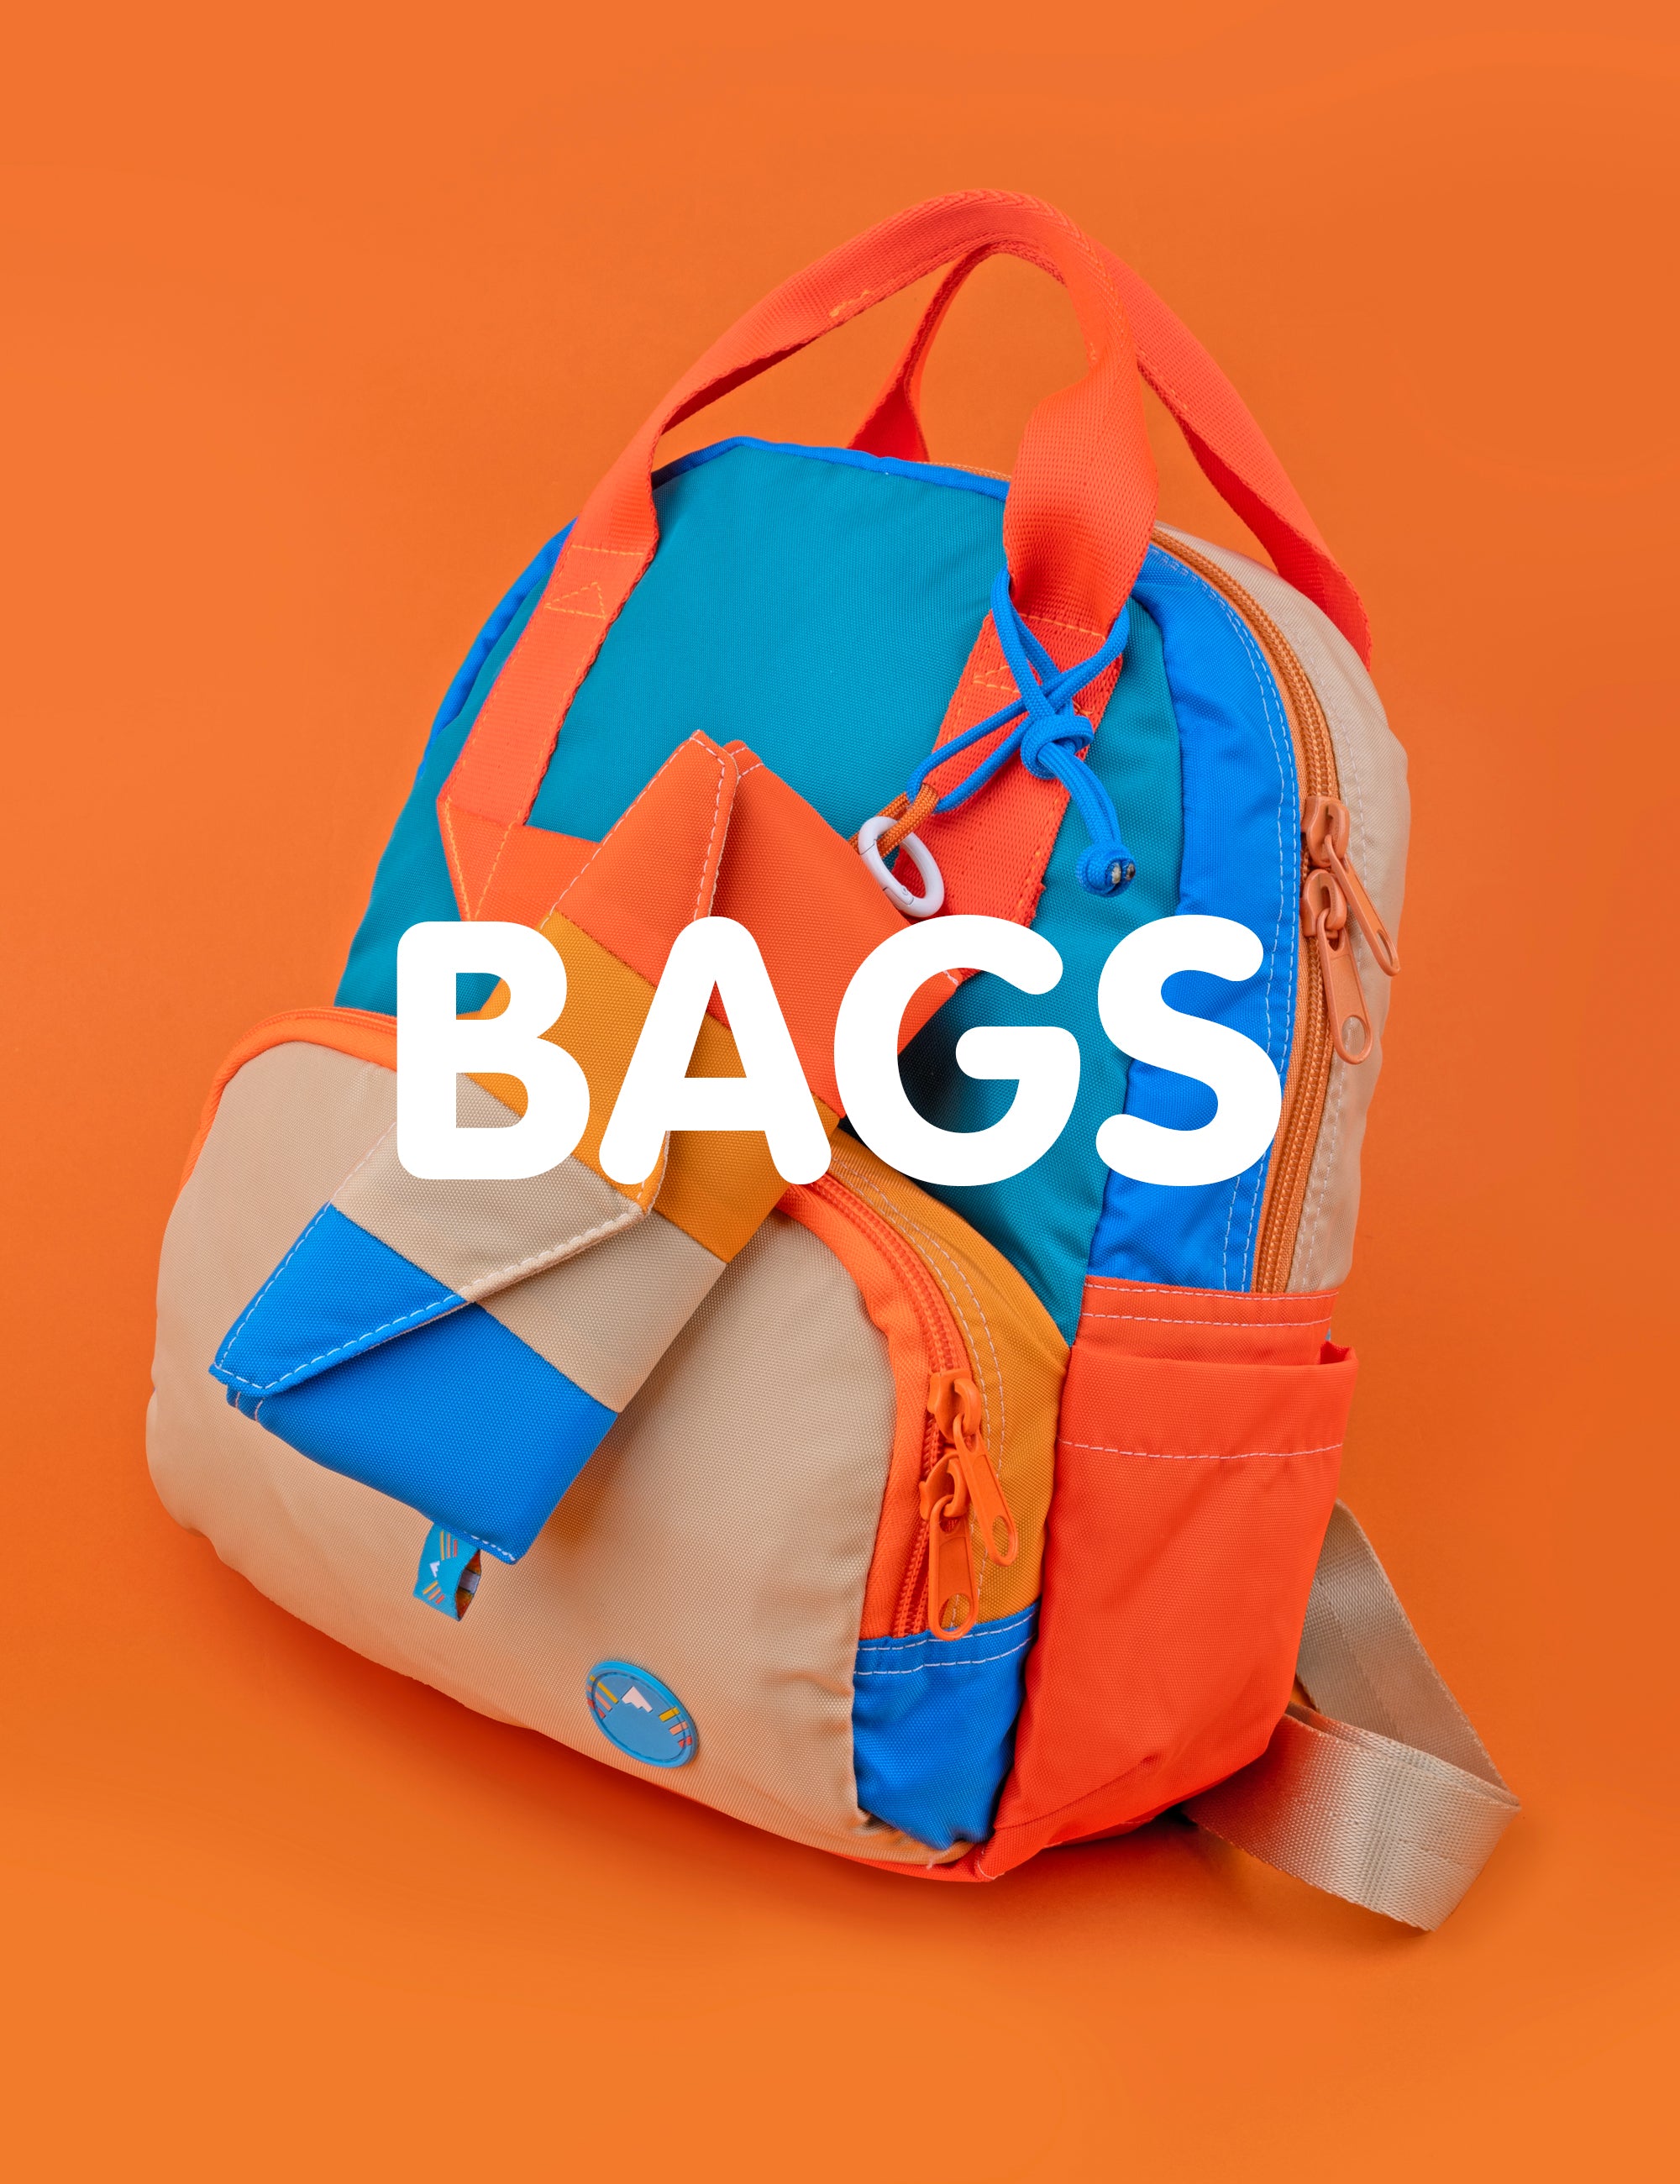 Backpacks & Bags.